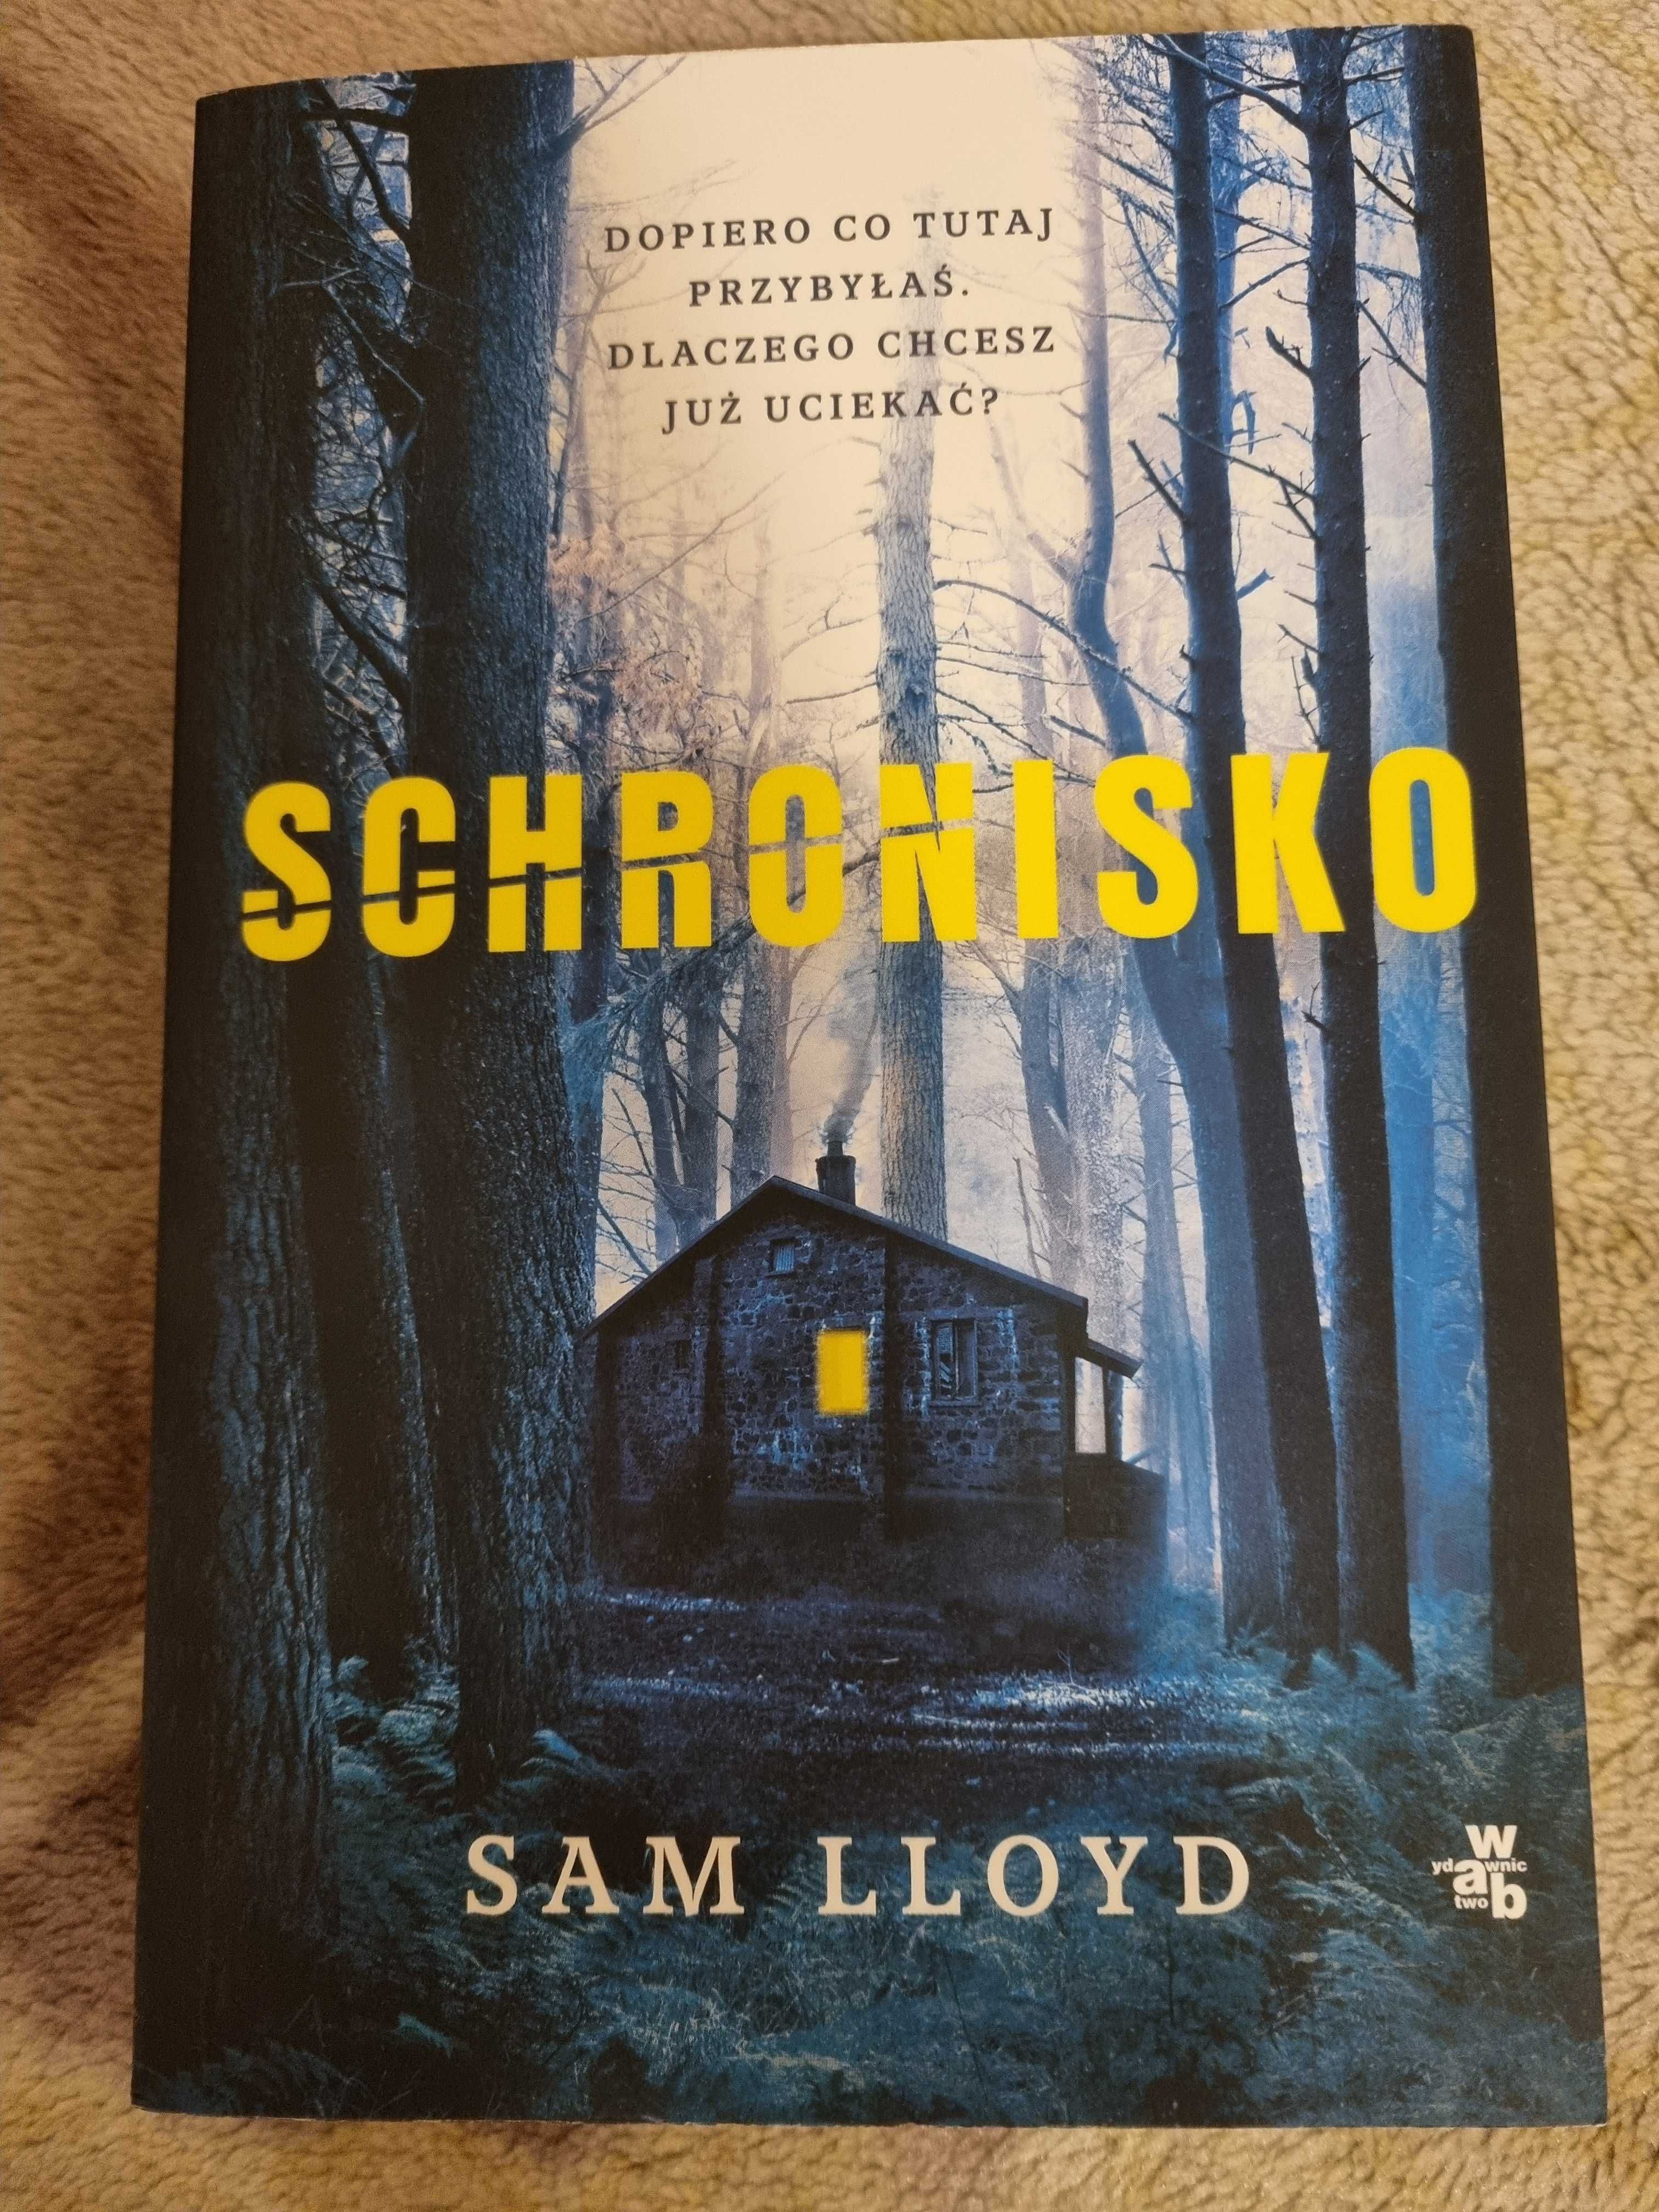 Sam Lloyd "Schronisko"